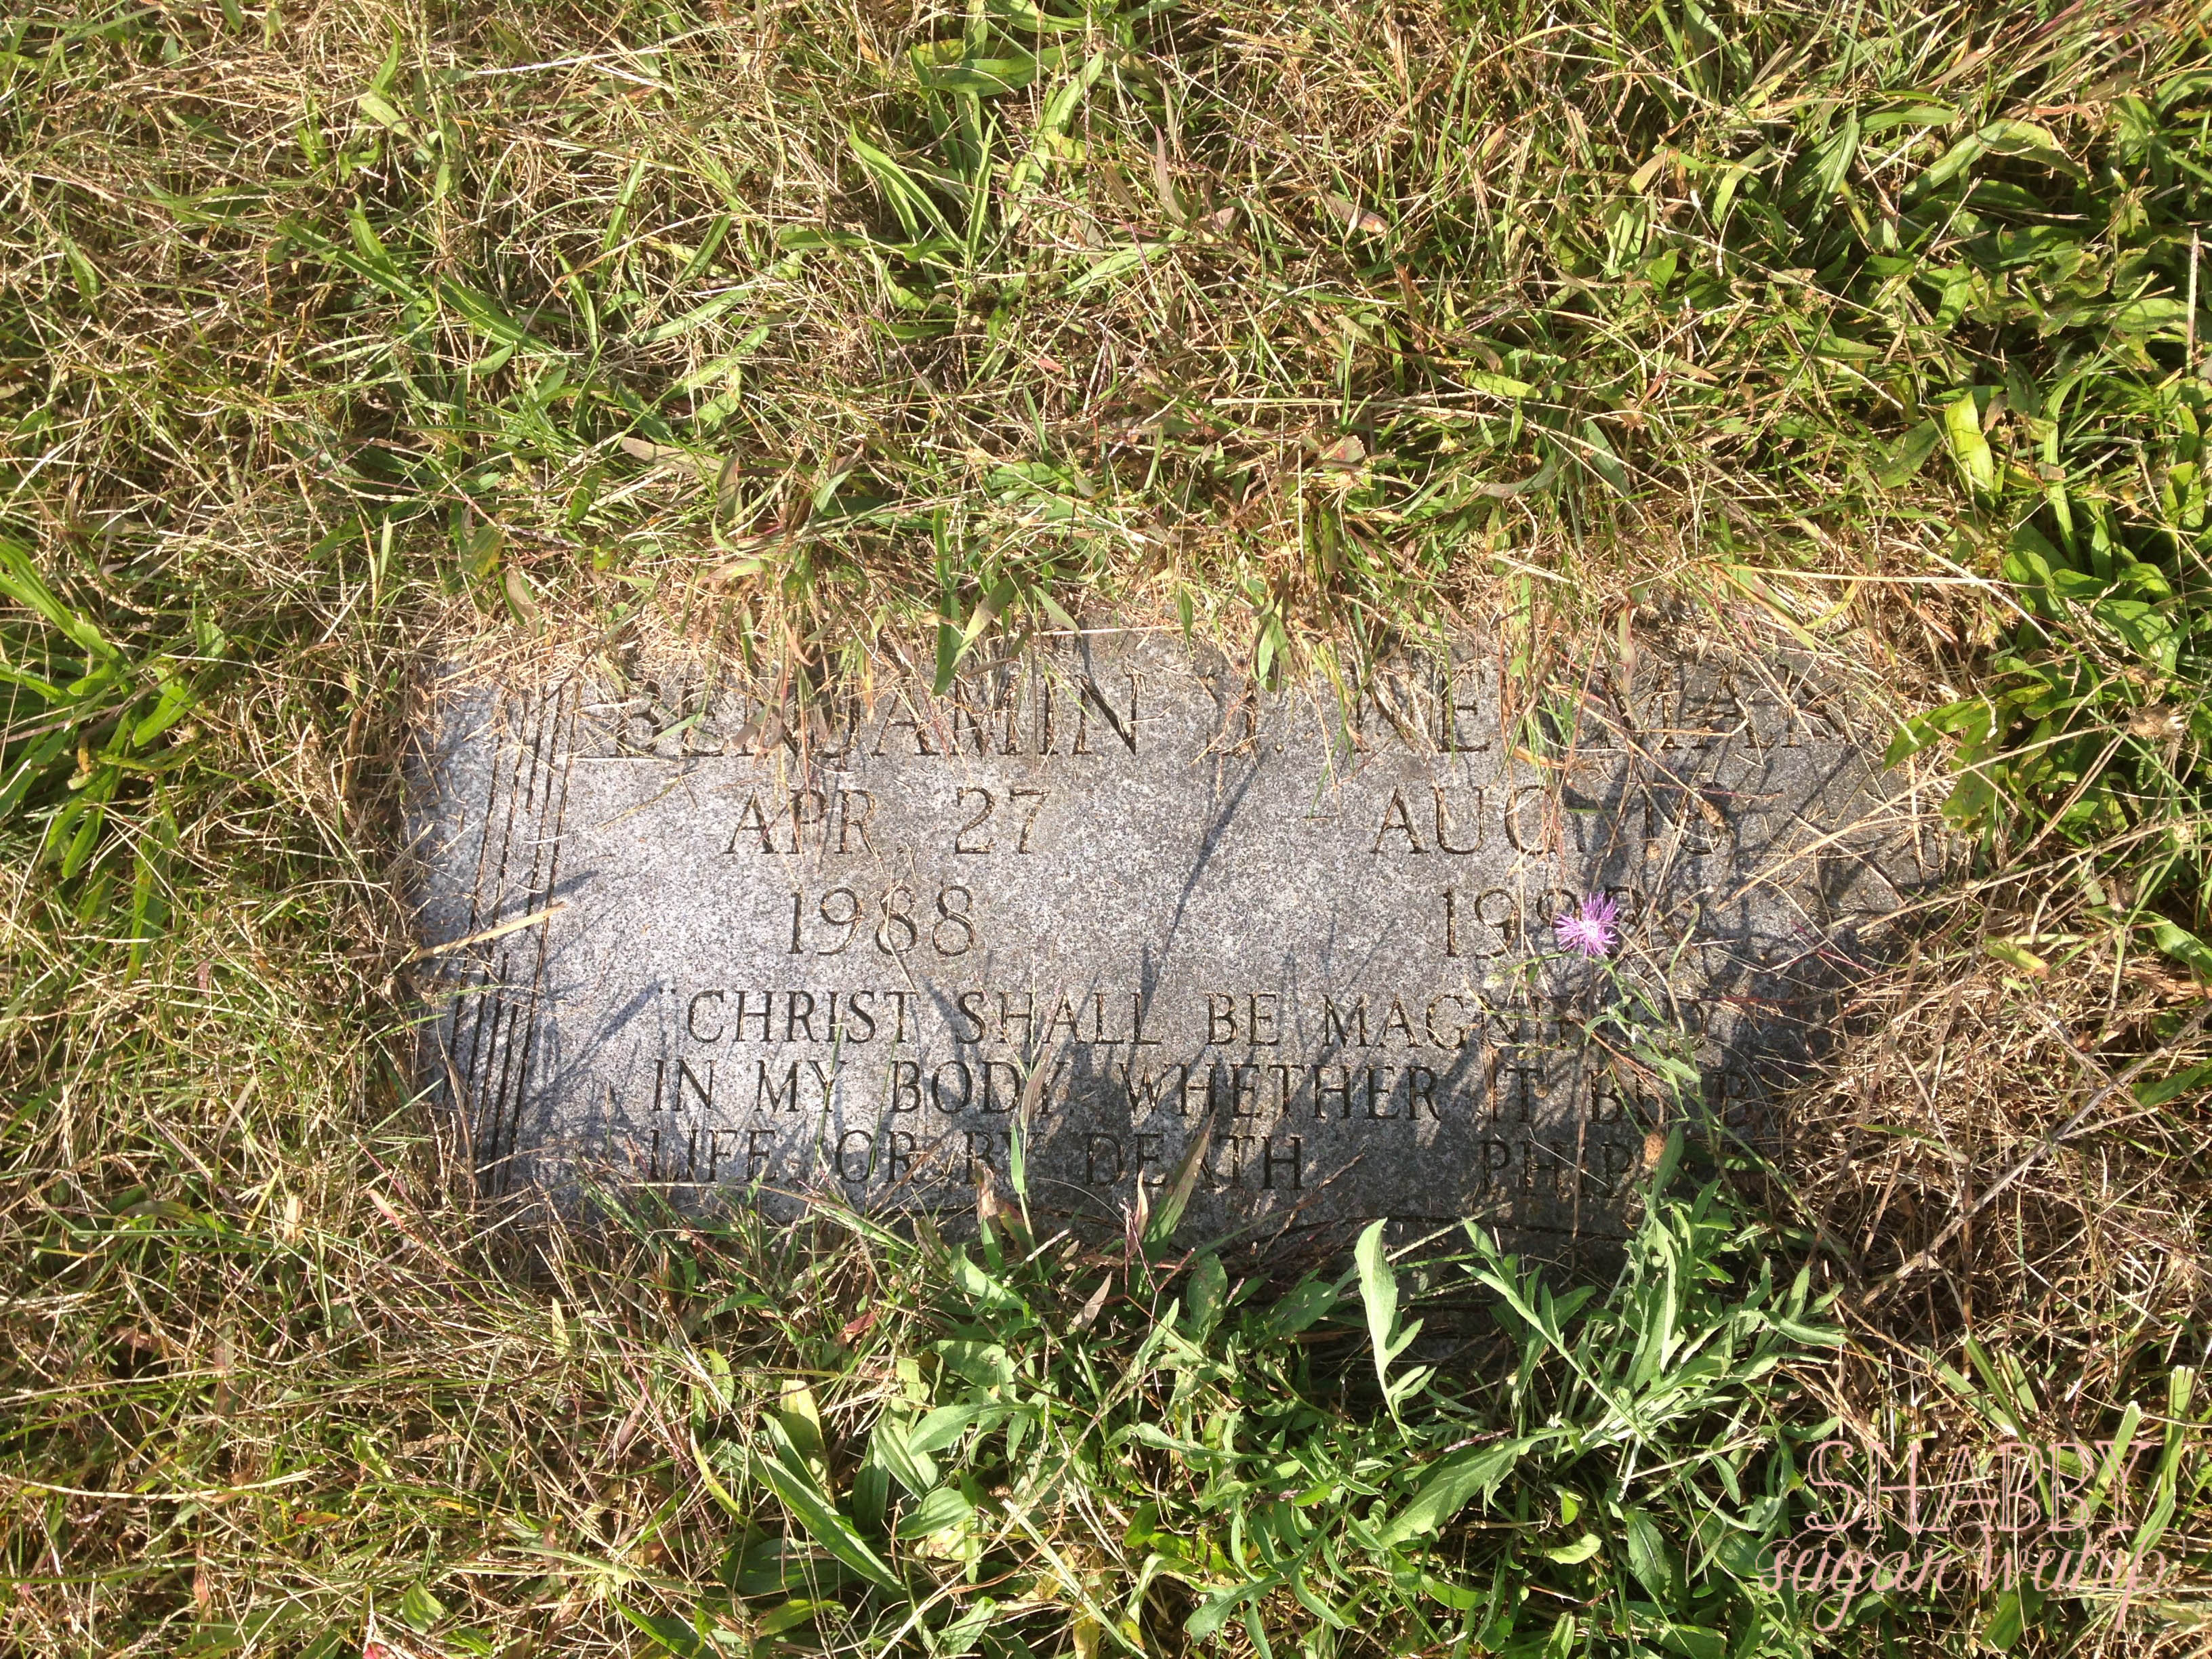 Ben's grave